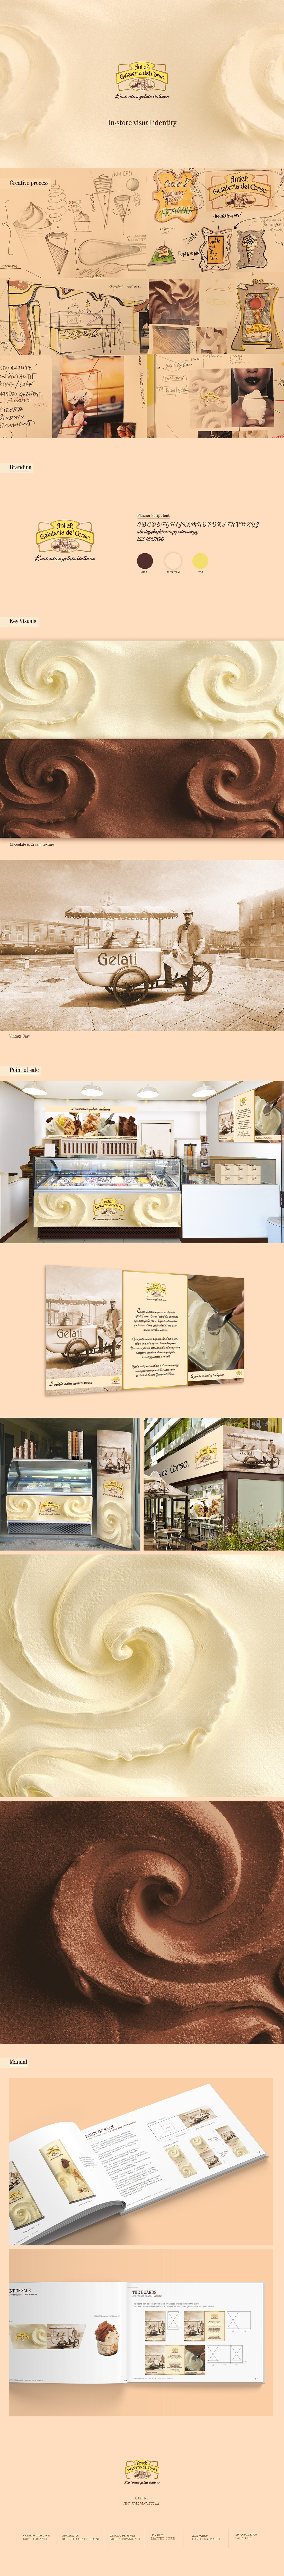 antica gelateria Interior design ice cream nestle Parma tradition gelati 6.14